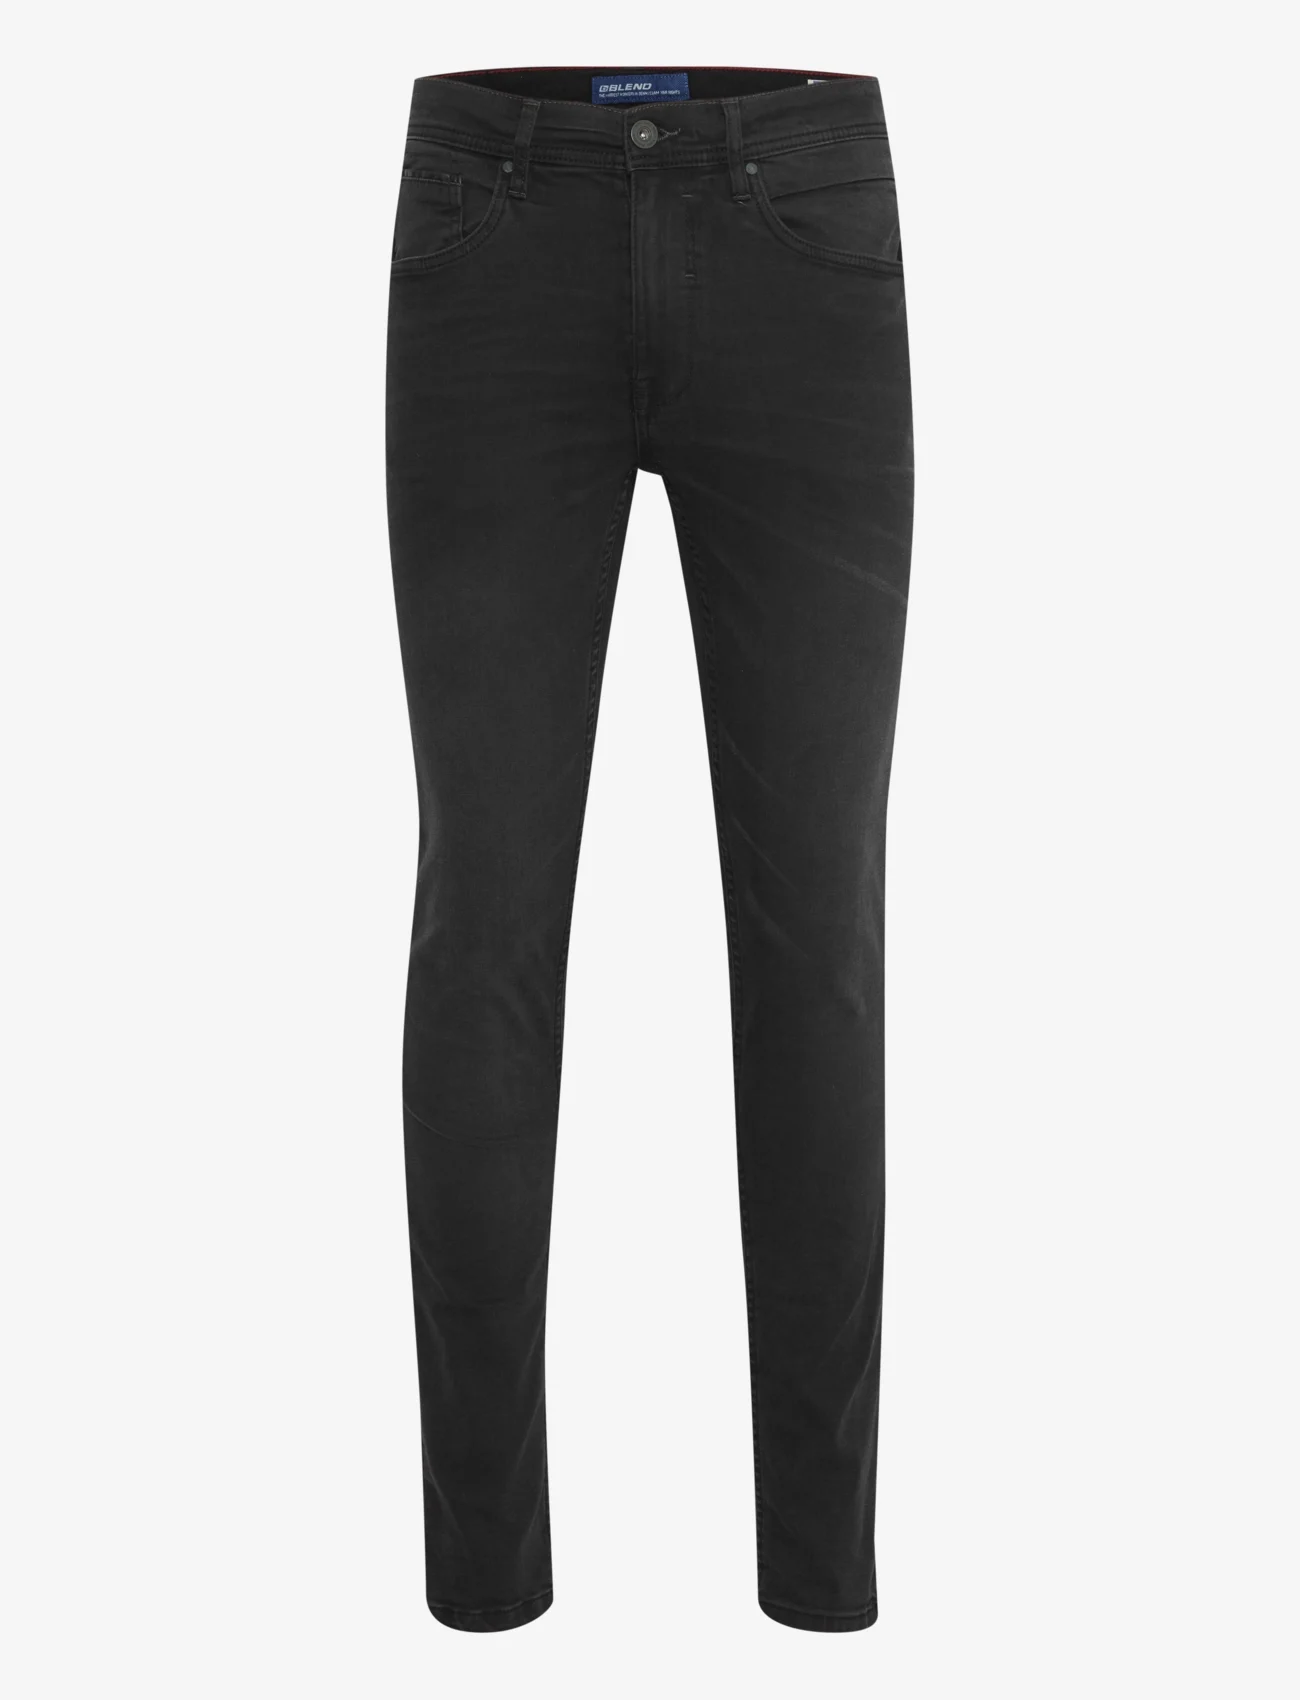 Blend - Jet fit - NOOS - slim jeans - denim black - 1